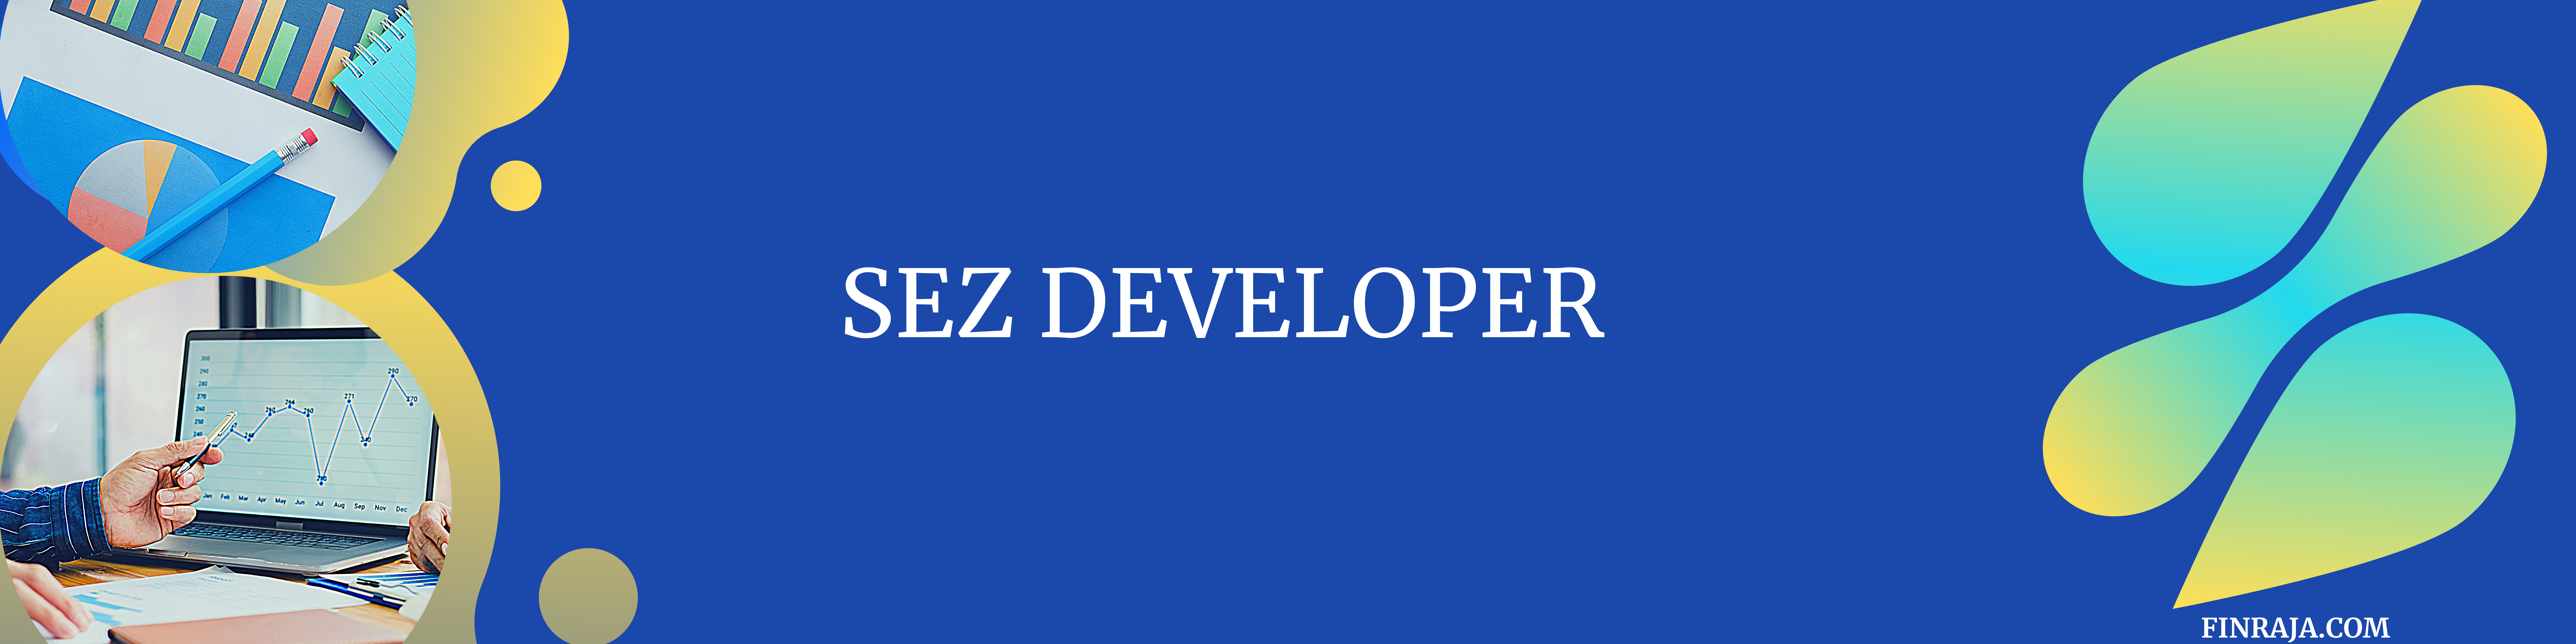 SEZ developer